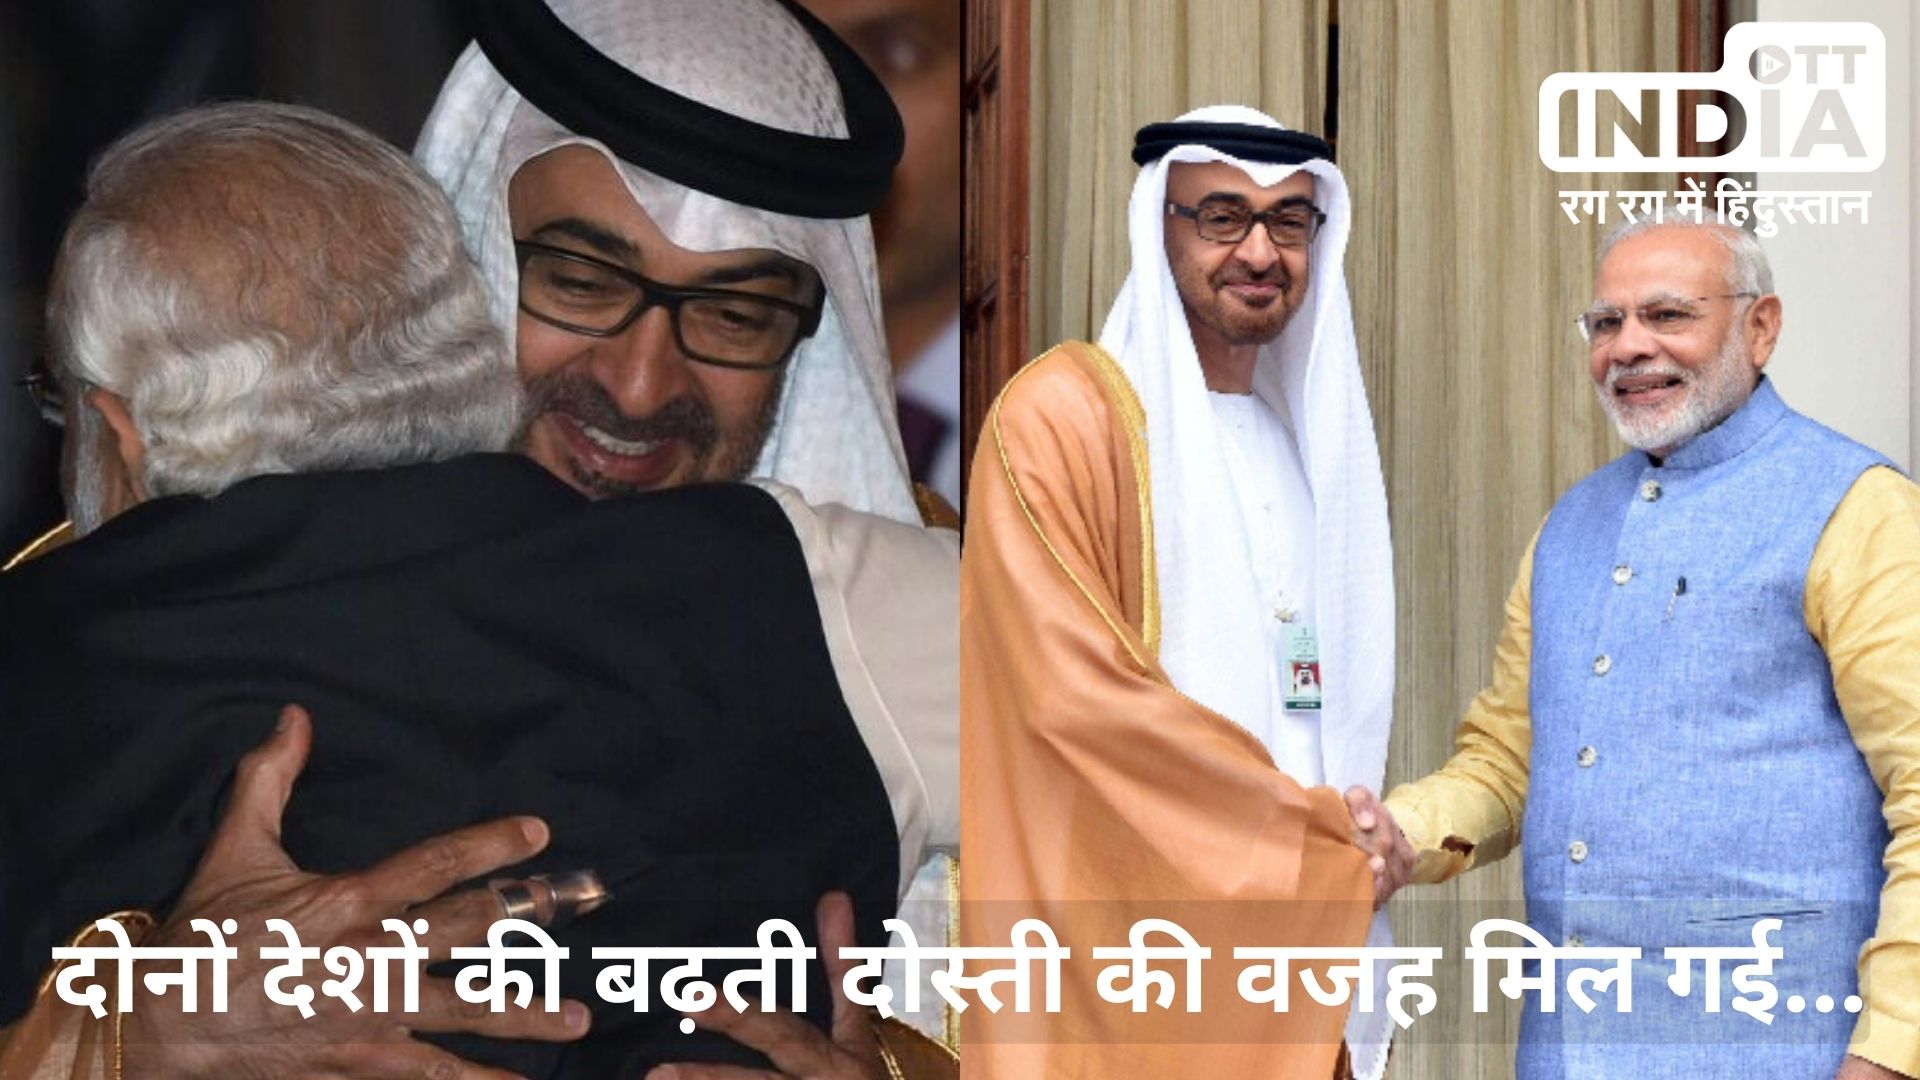 India UAE Relation: प्रधानमंत्री नरेन्द्र मोदी क्यों चाहते हैं संयुक्त अरब अमीरात से मज़बूत रिश्ते?